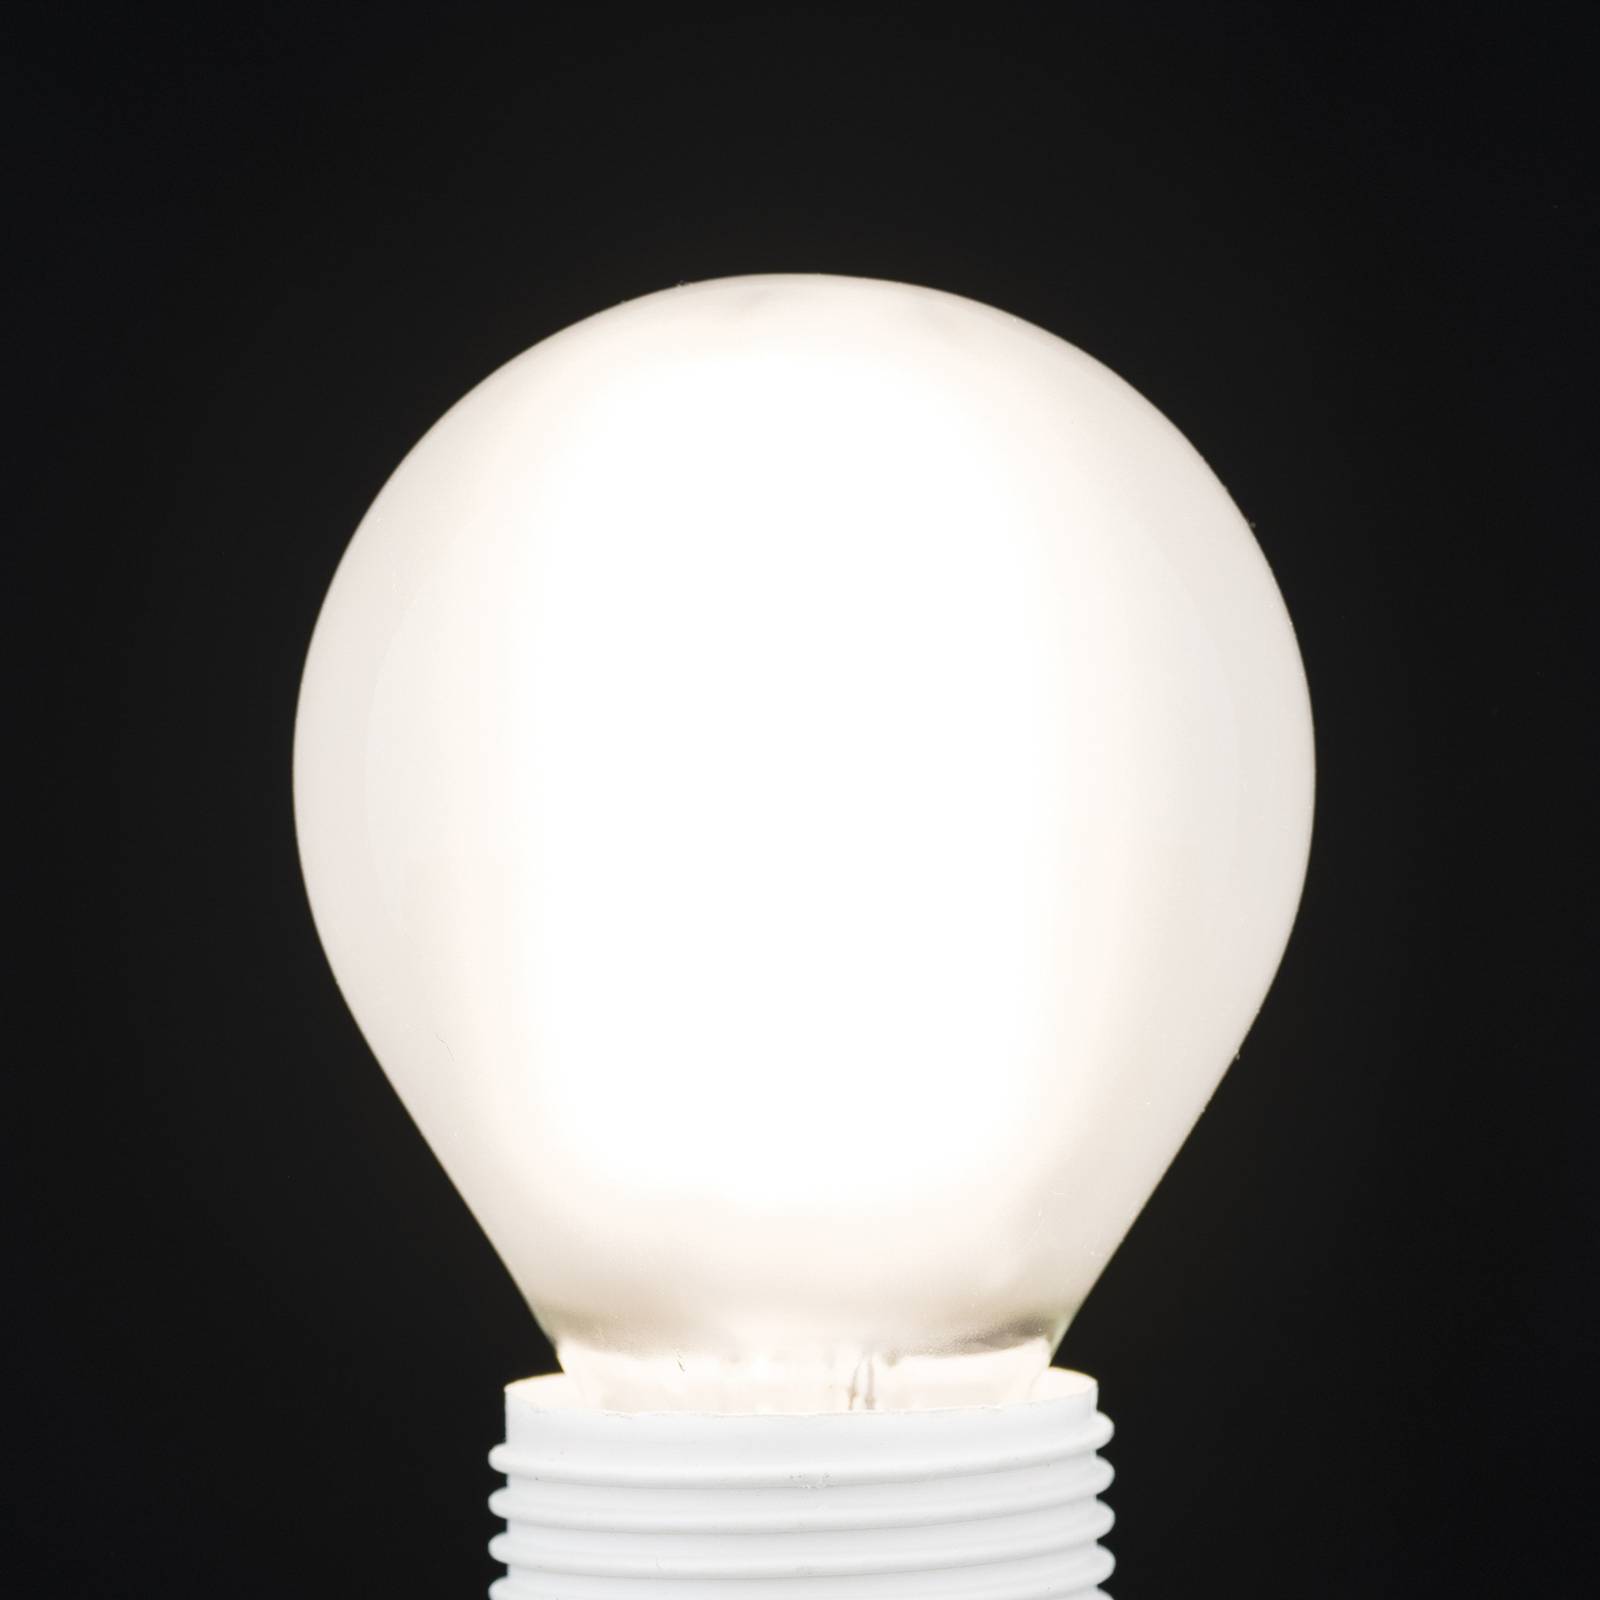 LED žiarovka, E27 G45, matná, 6W, 827, 720 lm, stmievateľná